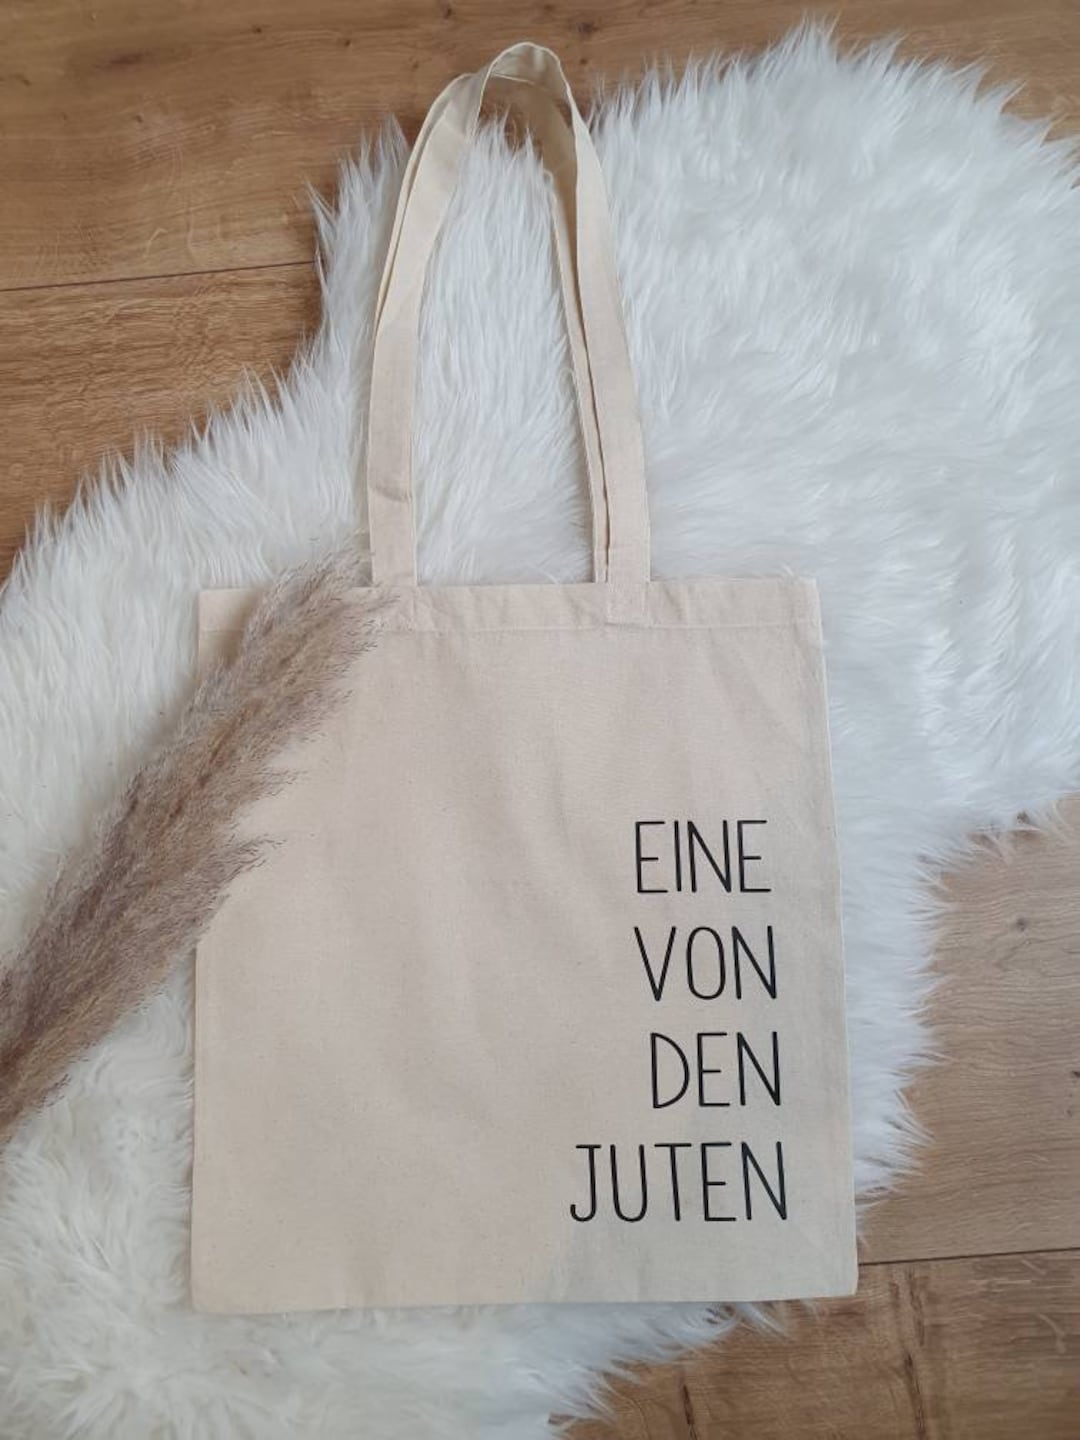 Baumwolltasche Einkaufstasche eine von den juten - .de